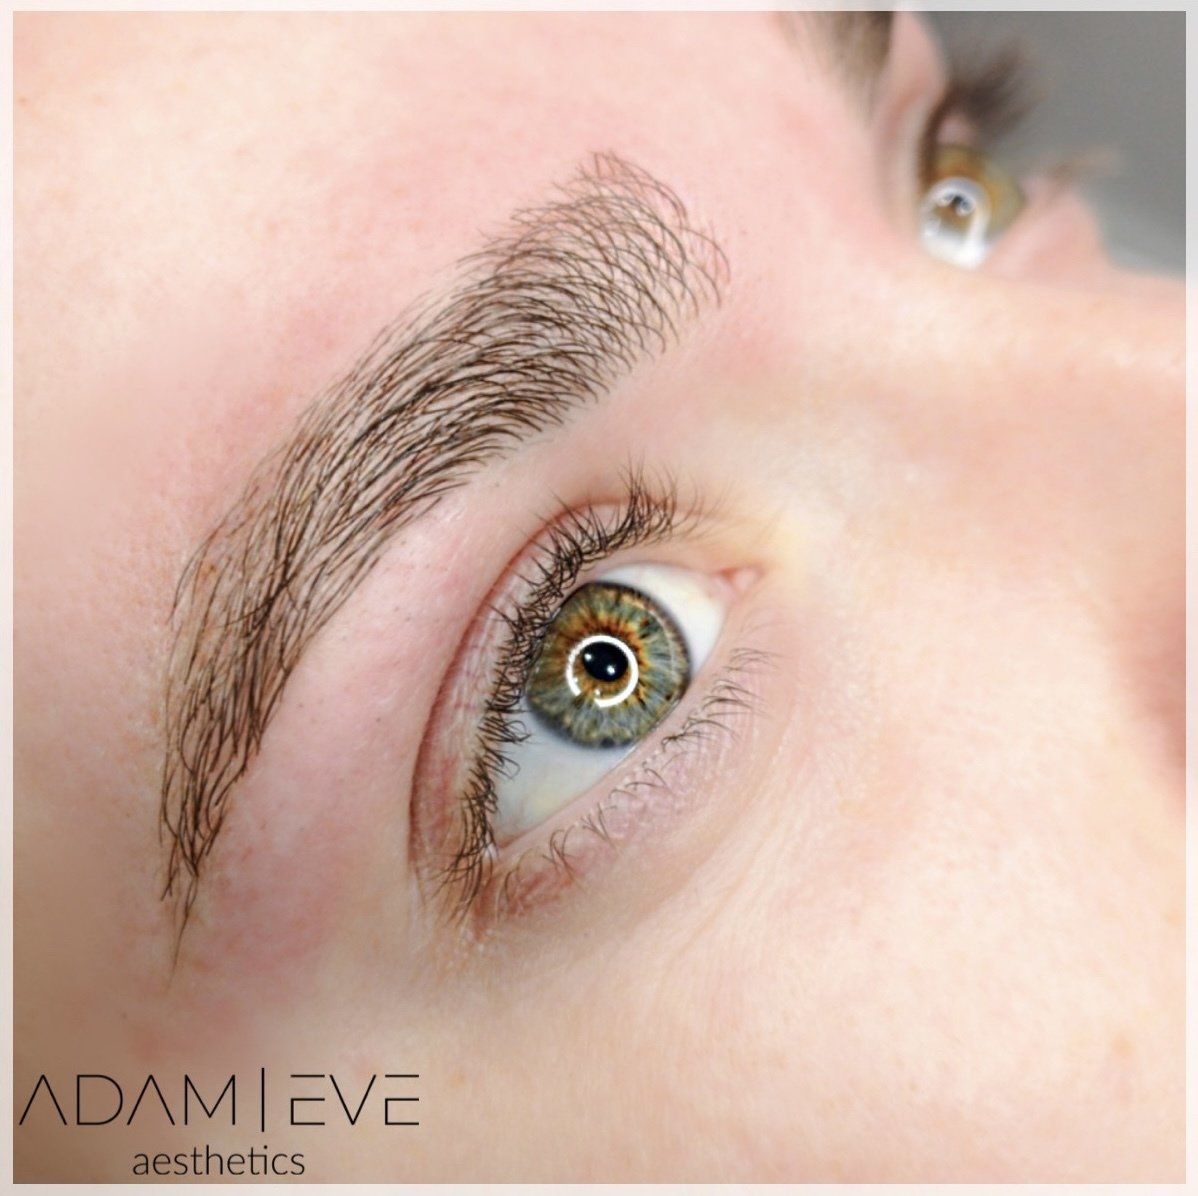 Een close-up van het oog van een vrouw met de esthetiek van Adam Eve op de onderkant geschreven